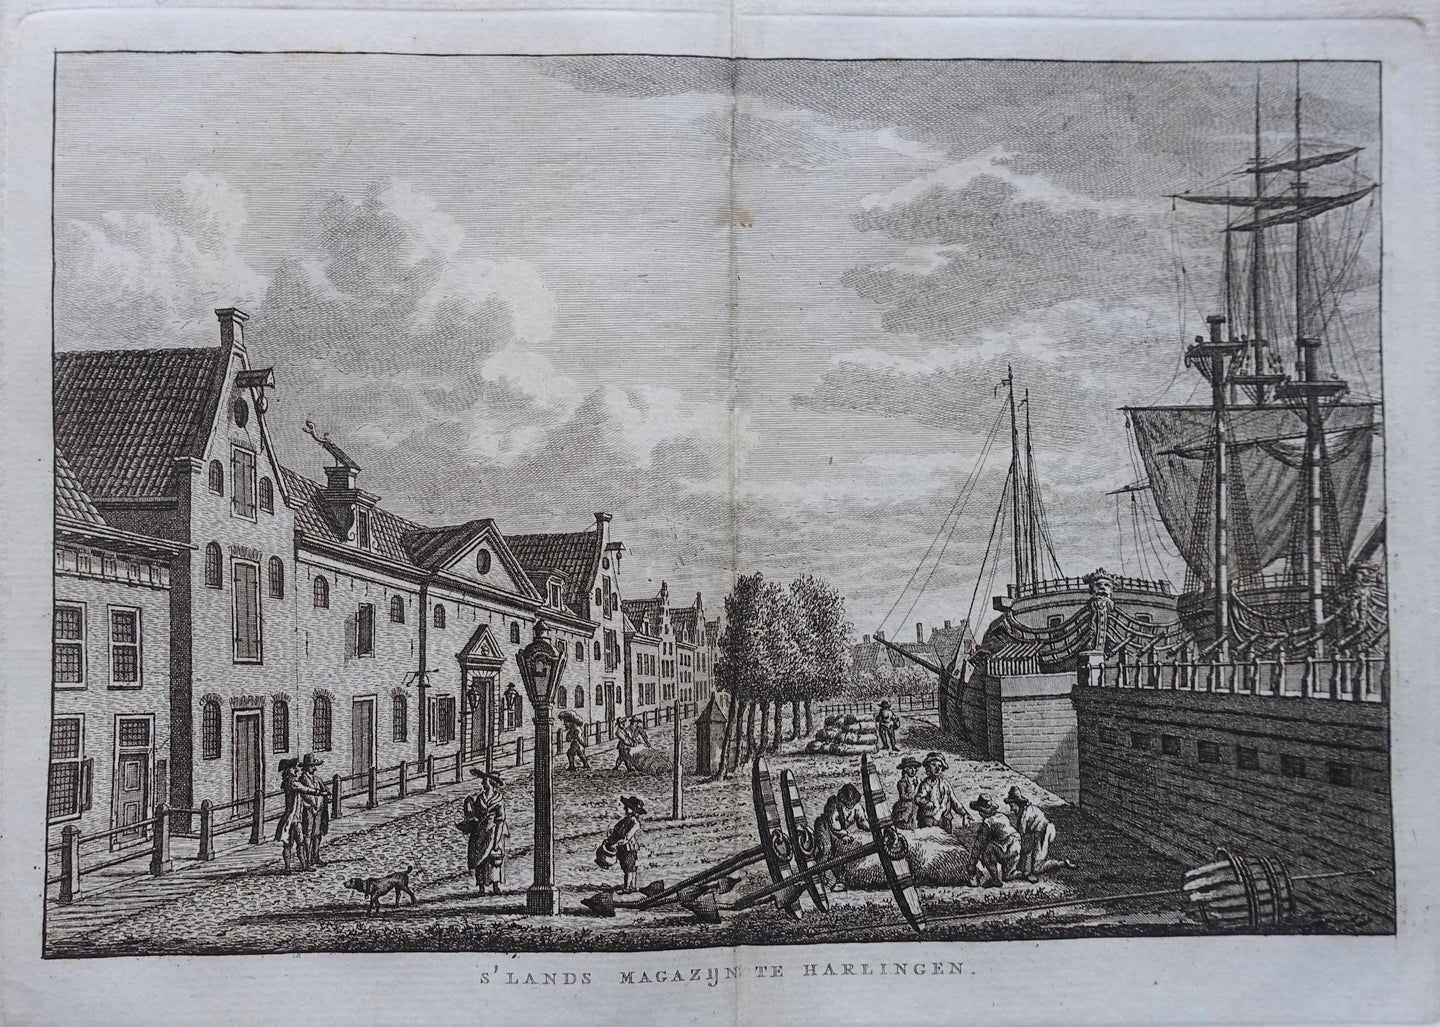 Harlingen 's 'Lands Magazijn' - KF Bendorp - 1793